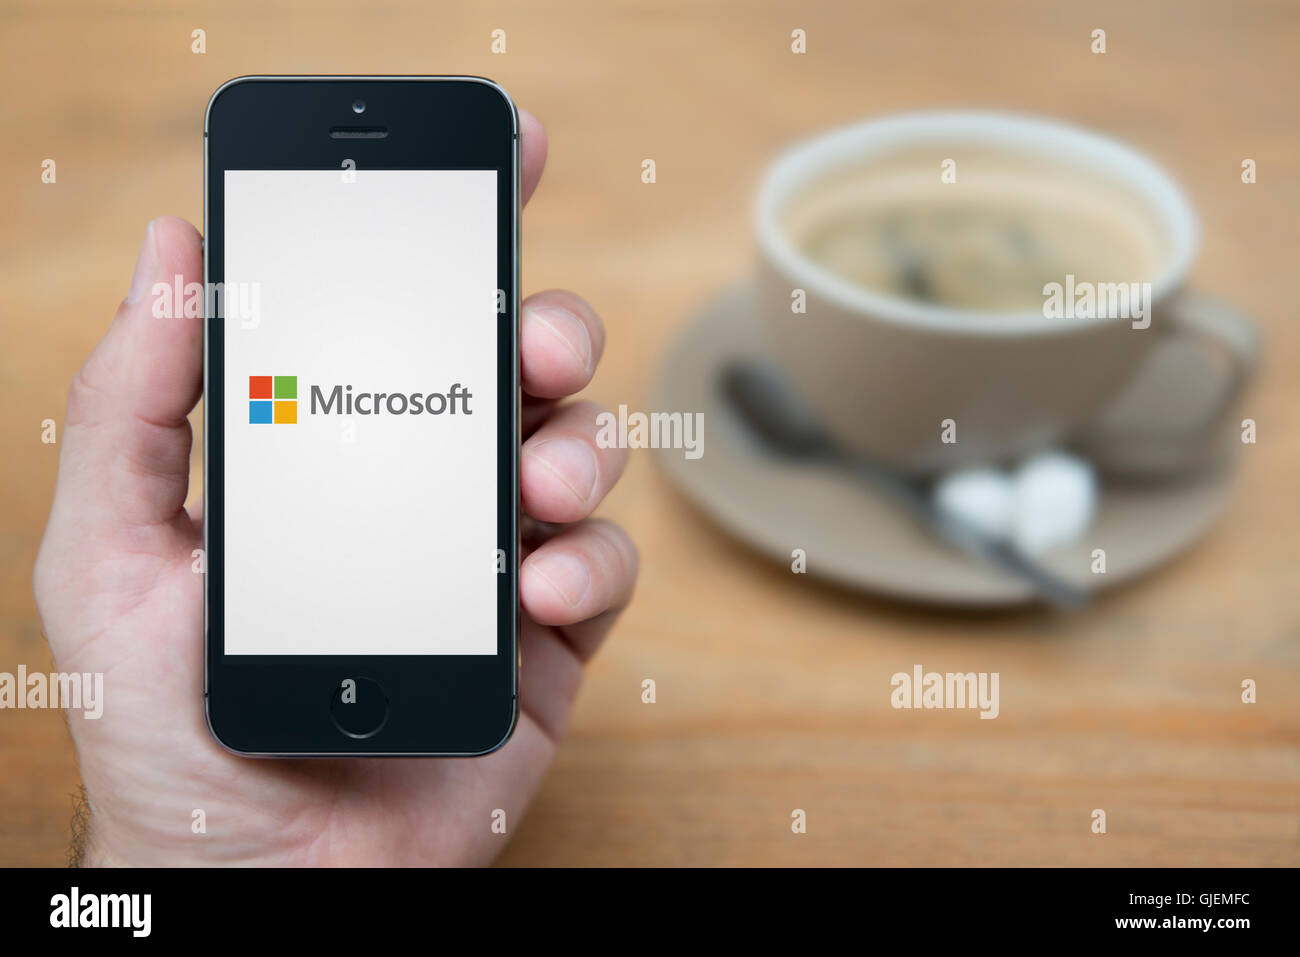 Un uomo guarda al suo iPhone che visualizza il logo Microsoft, mentre sat con una tazza di caffè (solo uso editoriale). Foto Stock